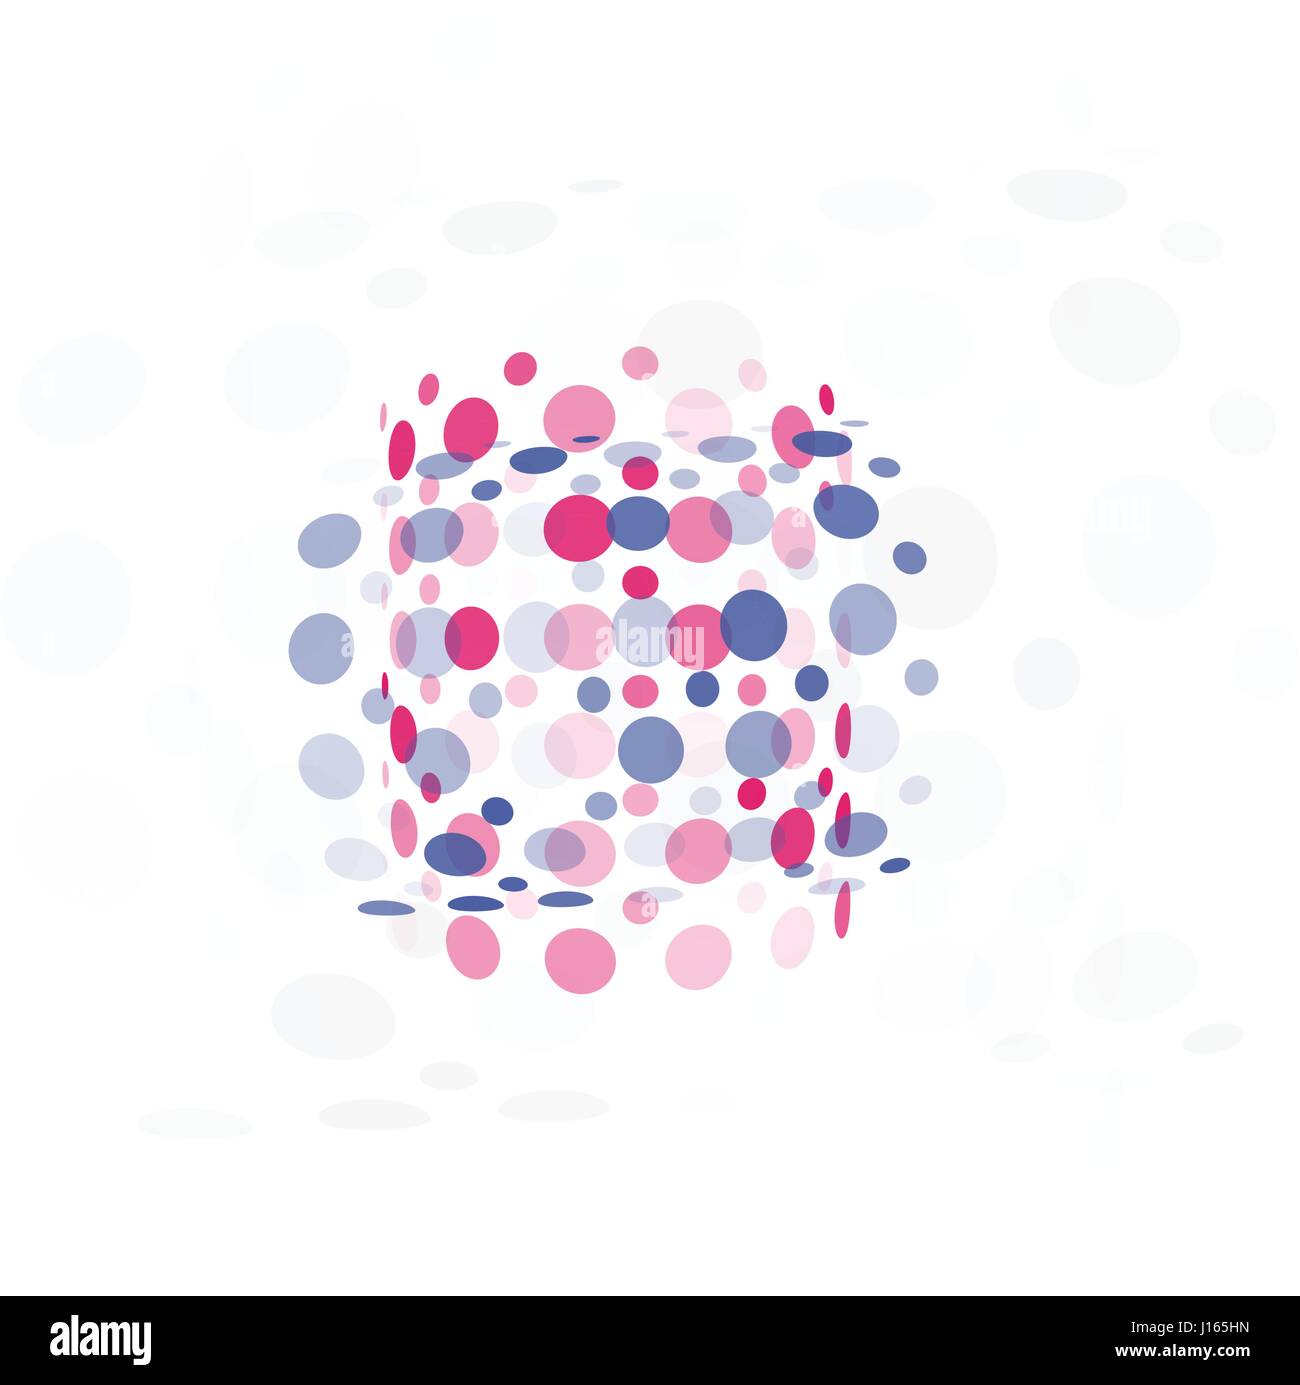 Isolierte abstrakt bunt ungewöhnliche Form Logo Blasen, gepunktete Schriftzug auf schwarzem Hintergrund-Vektor-illustration Stock Vektor